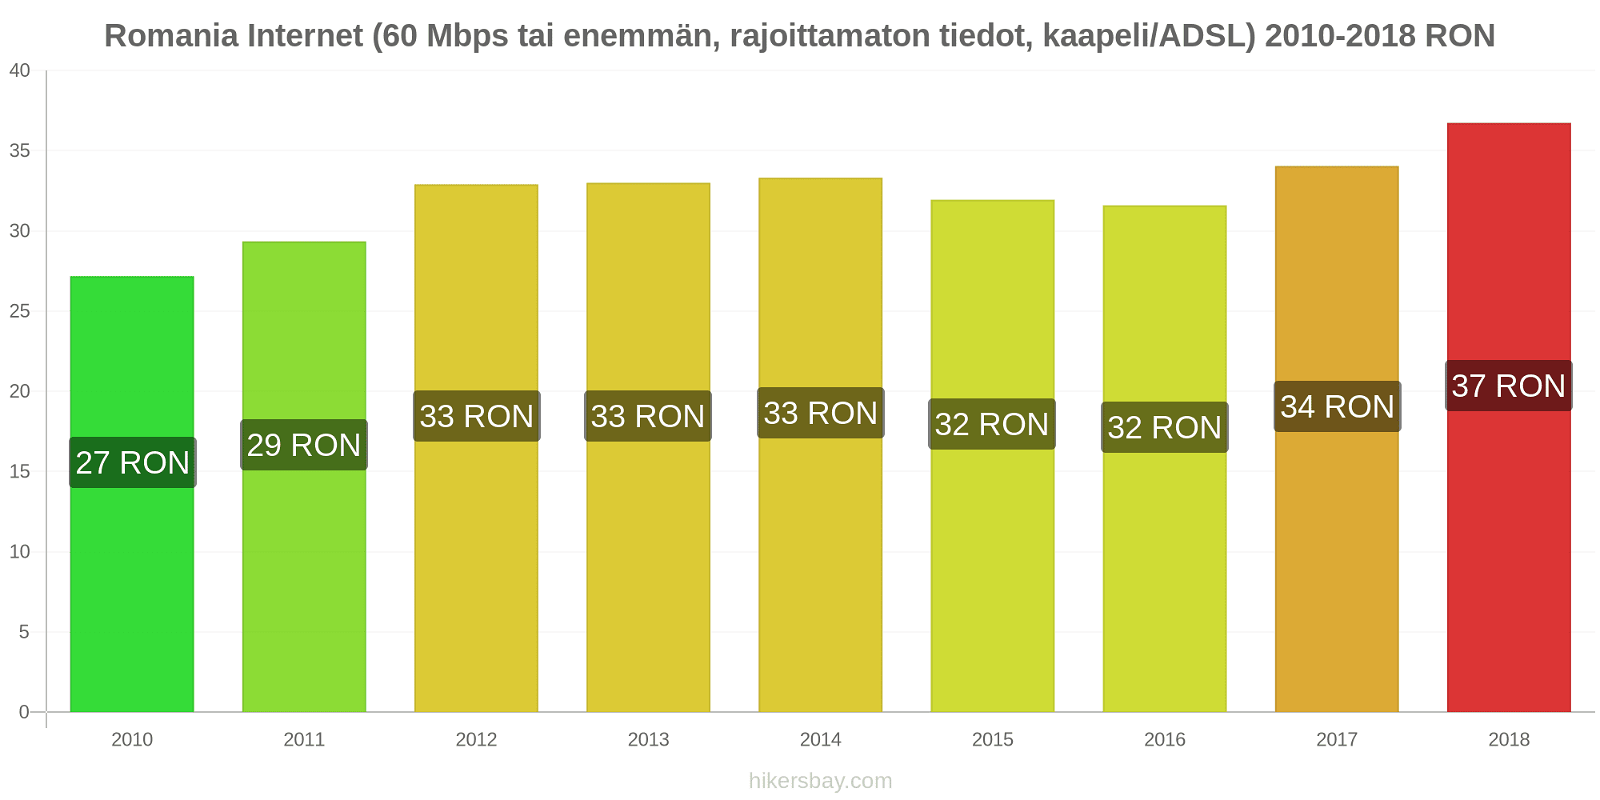 Romania hintojen muutokset Internet (60 Mbps tai enemmän, rajoittamaton tiedot, kaapeli/ADSL) hikersbay.com